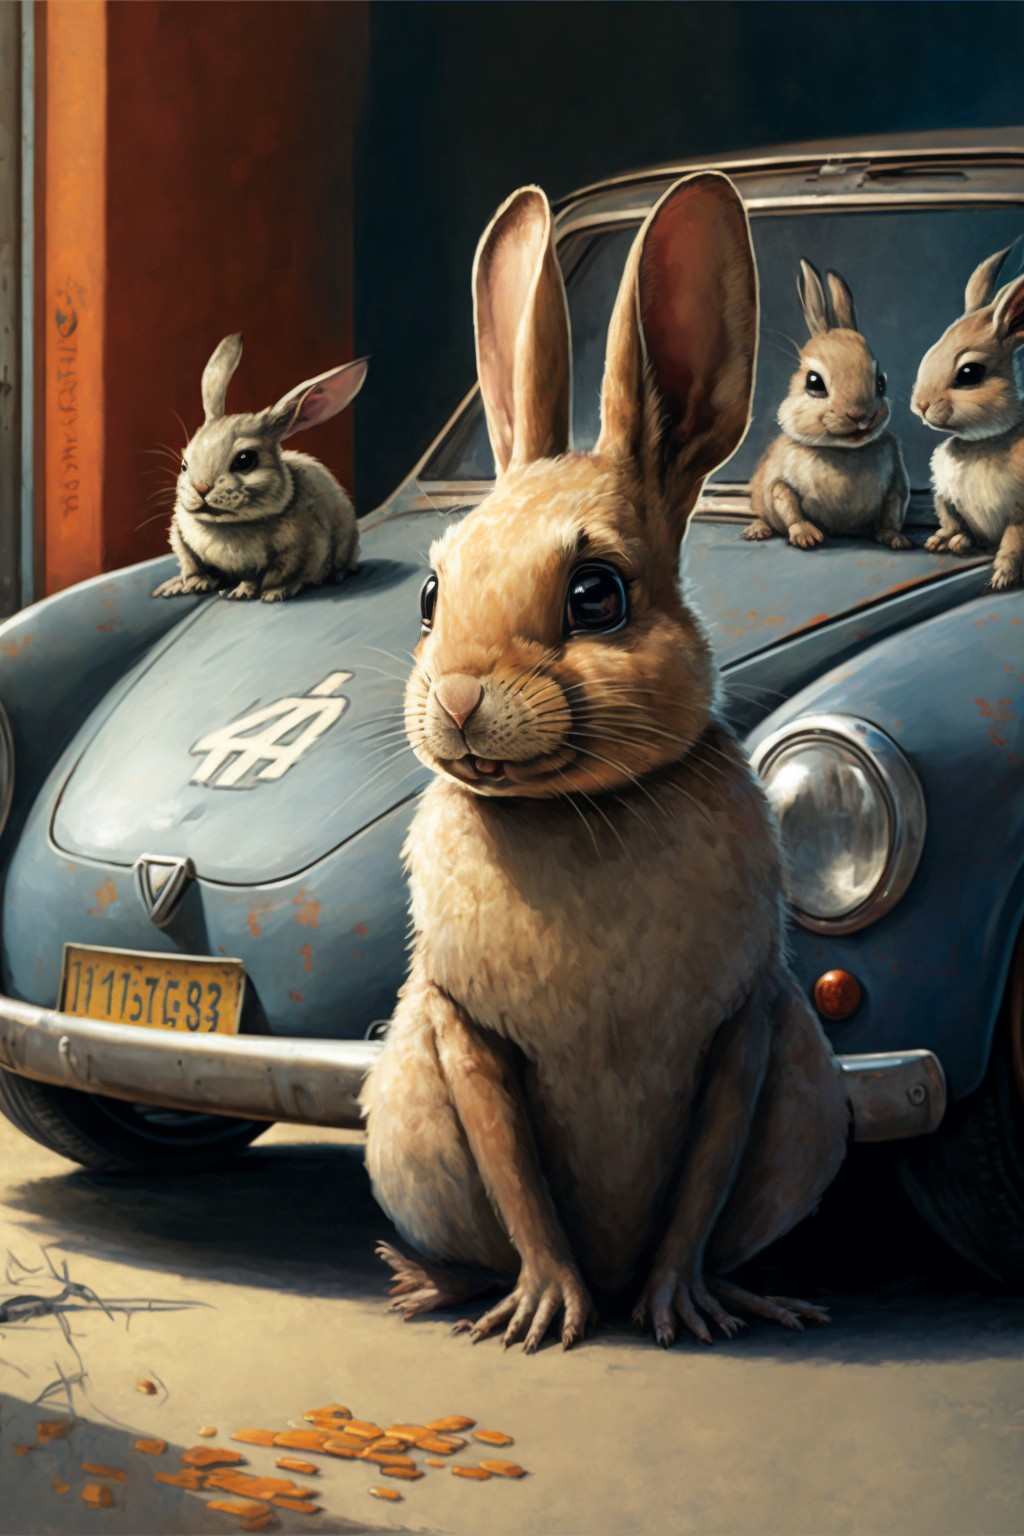 兔子爷爷与兔子孙子开车